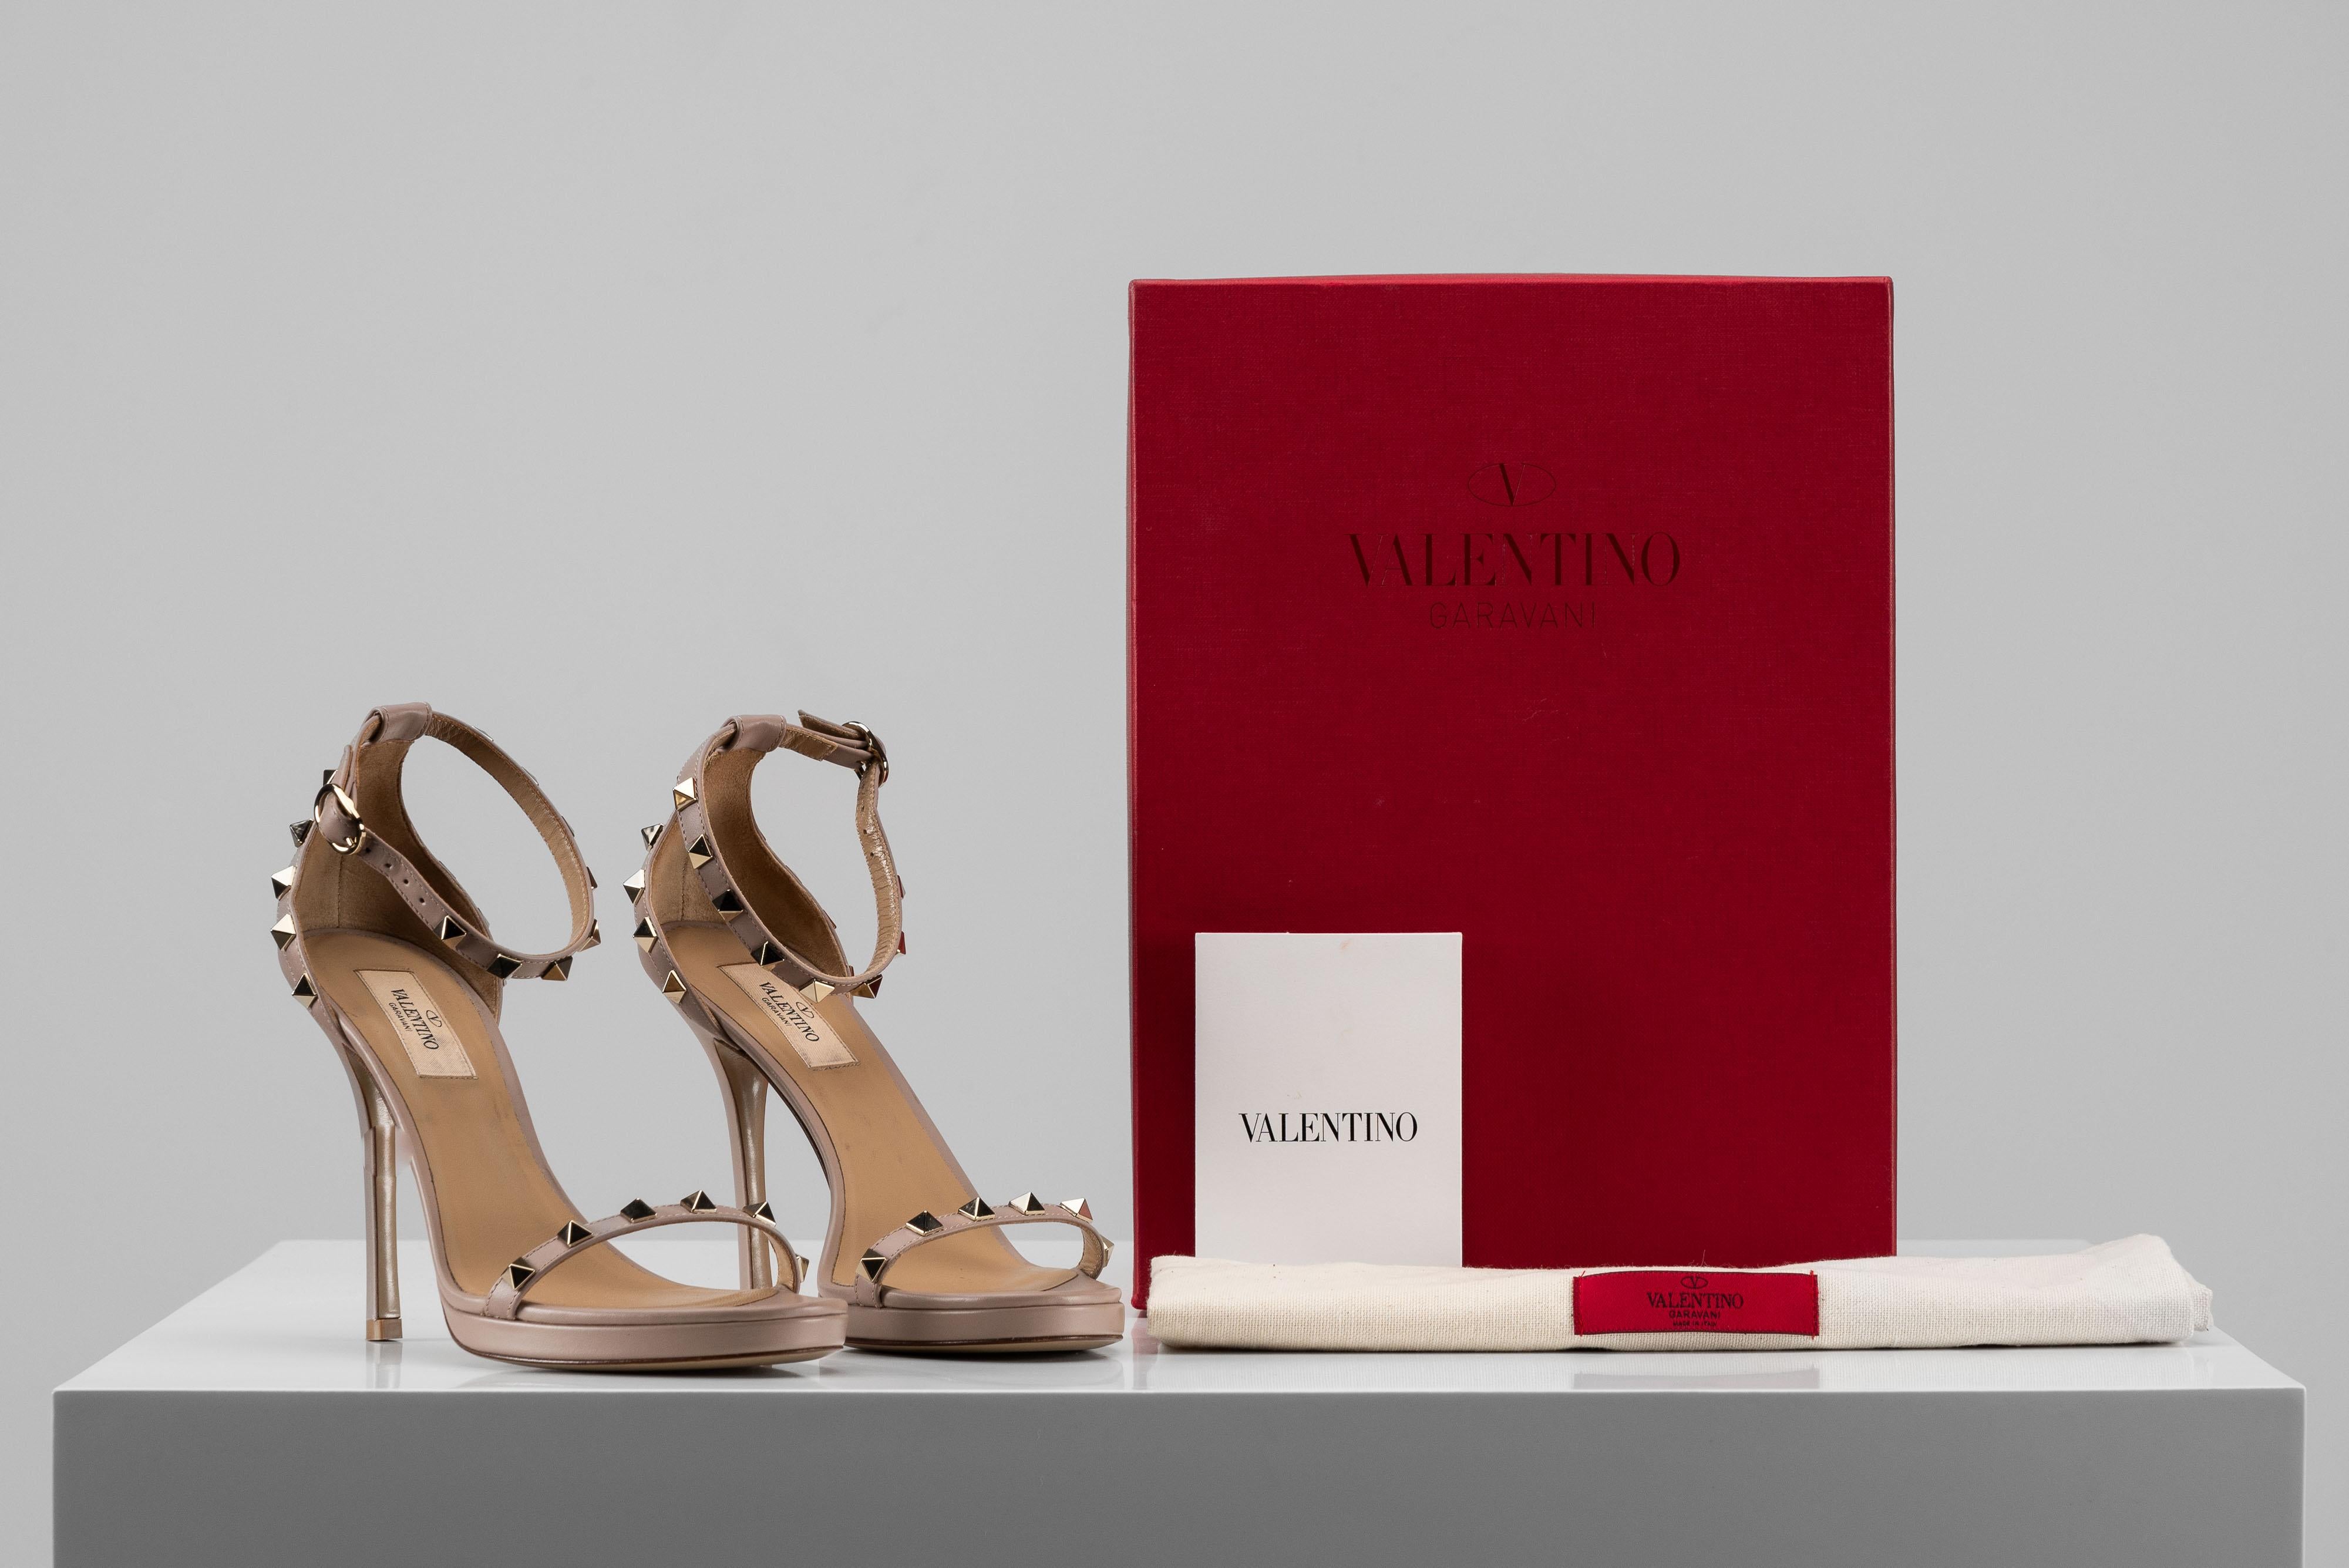 La collection SAVINETI propose cette paire de talons Valentino Ruckstud :
- Marque : Valentino 
- Modèle : Sandale à talons Rockstud
- Taille : 38 1/2
- Condit : Très bon 
- Année : 2020
- Extras : Set complet (Dustbag, Box &